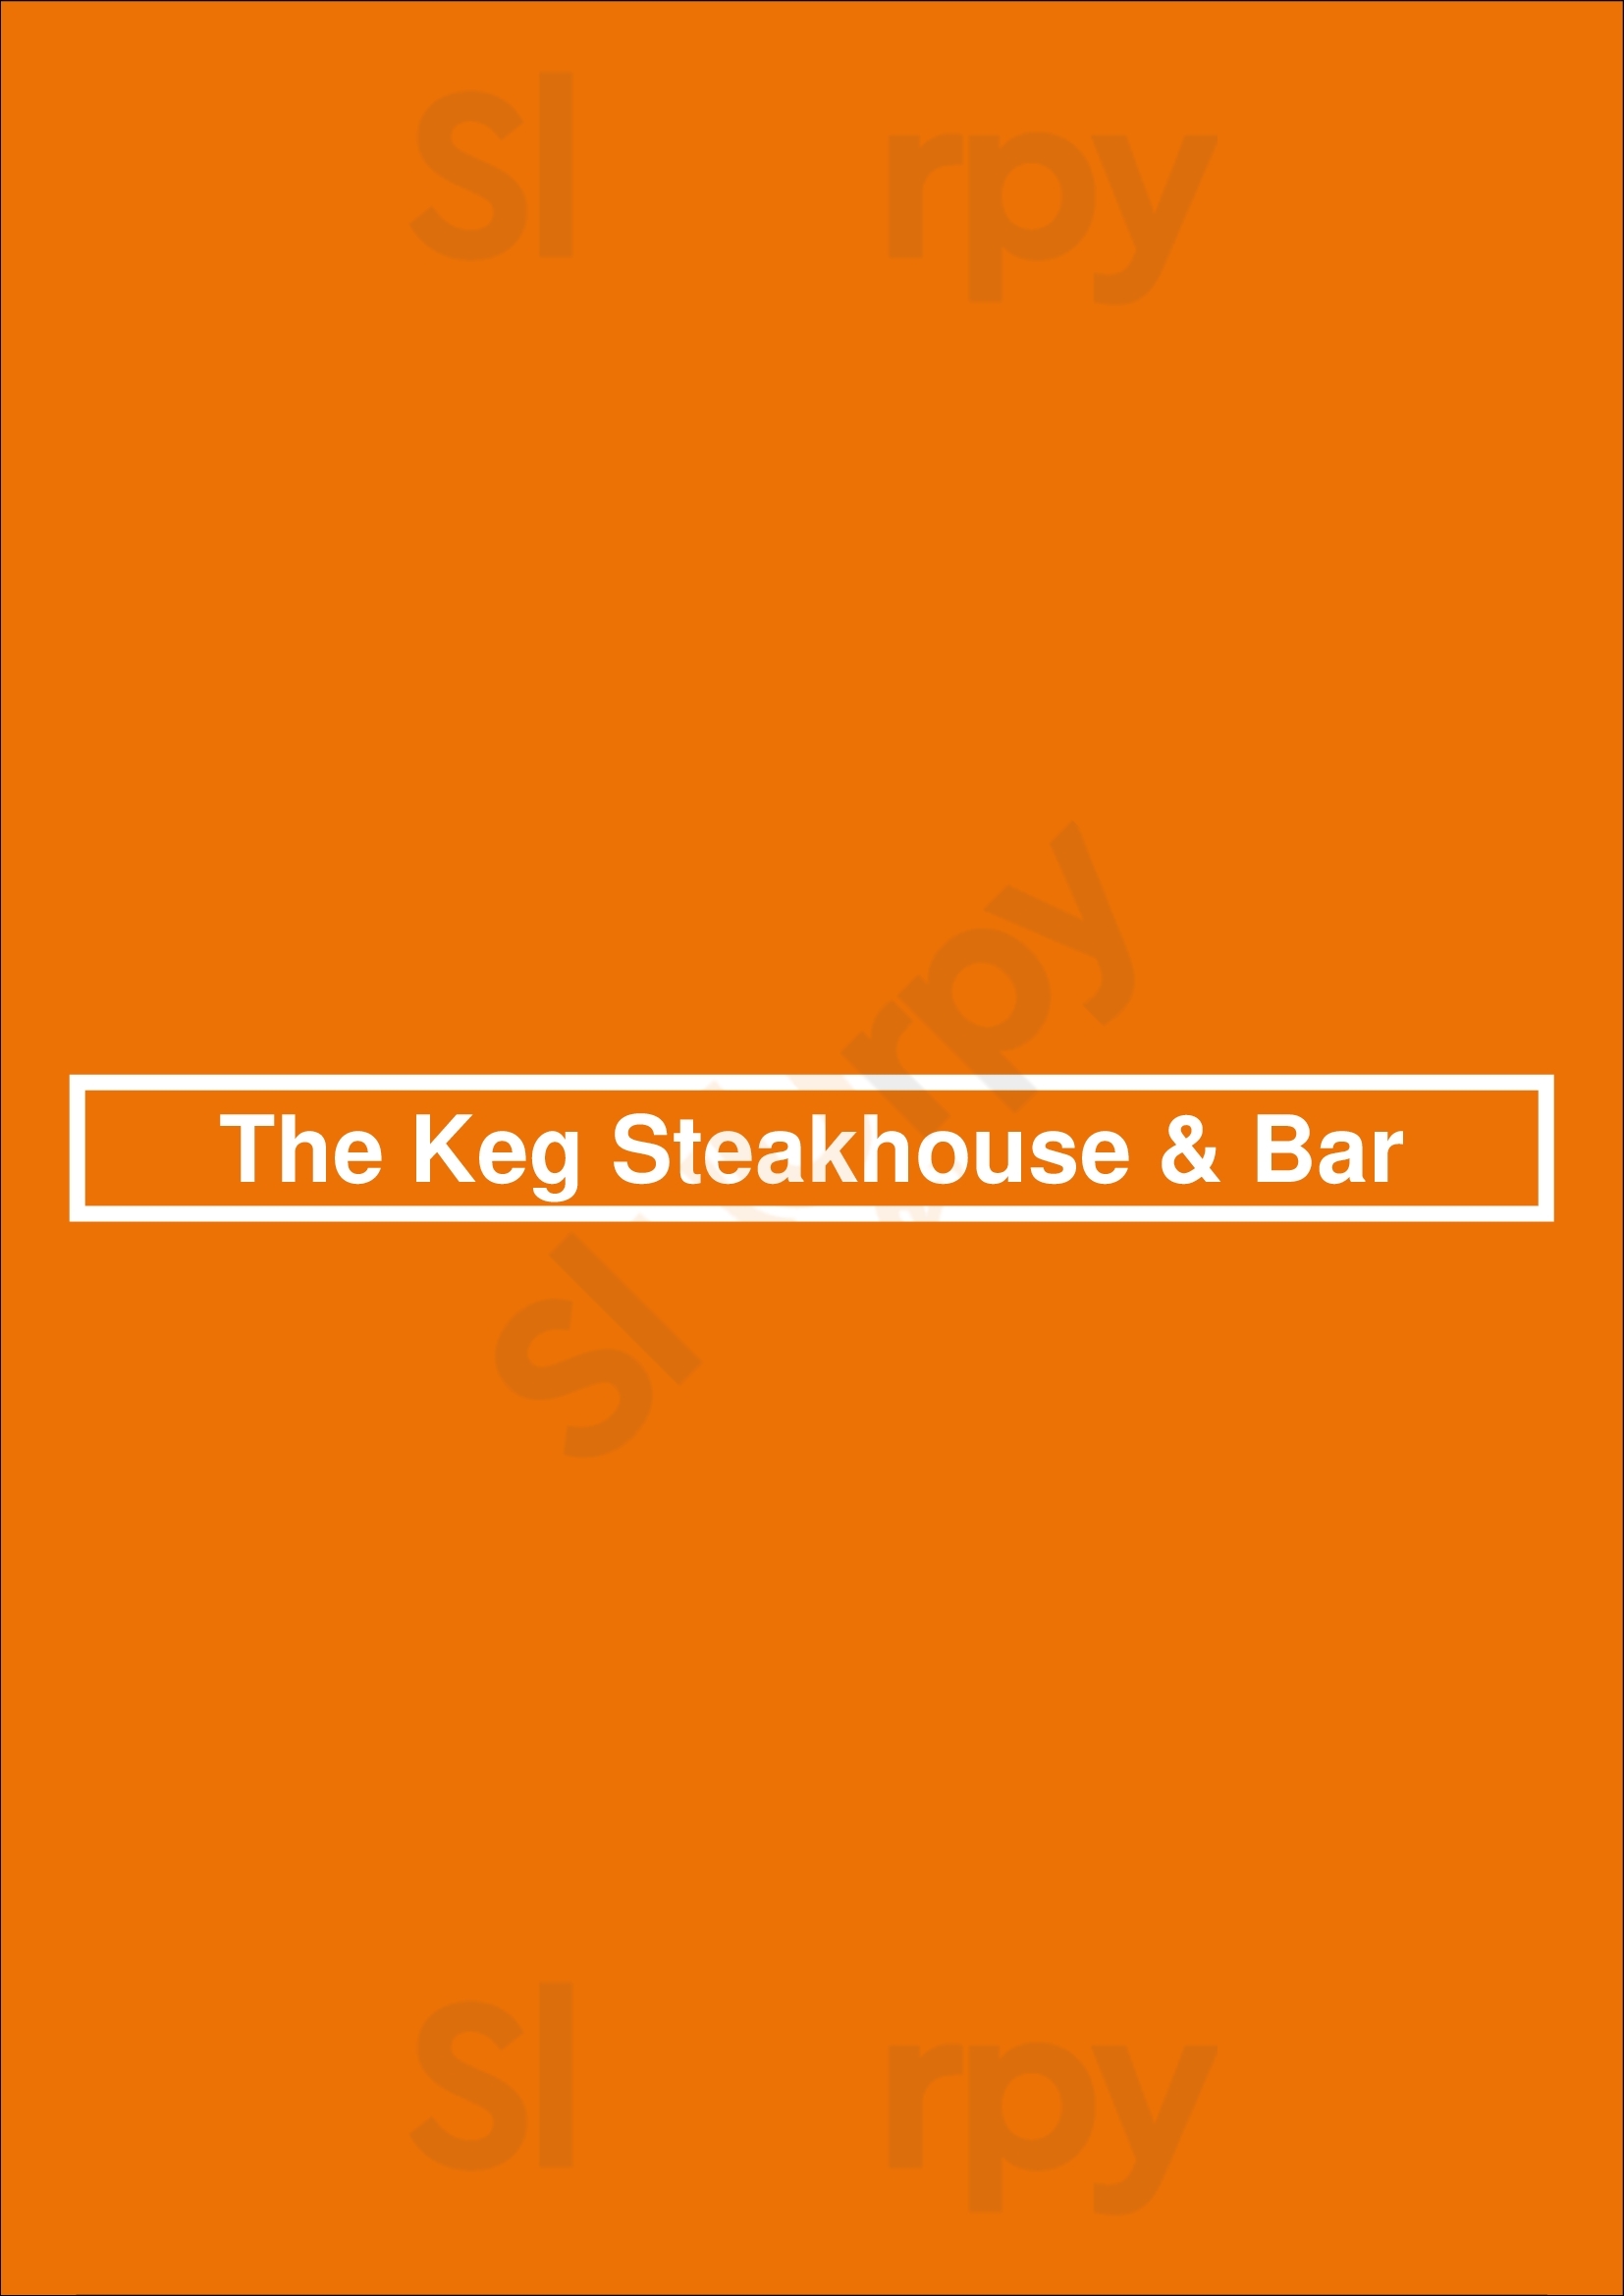 The Keg Steakhouse + Bar - Thunder Bay Thunder Bay Menu - 1